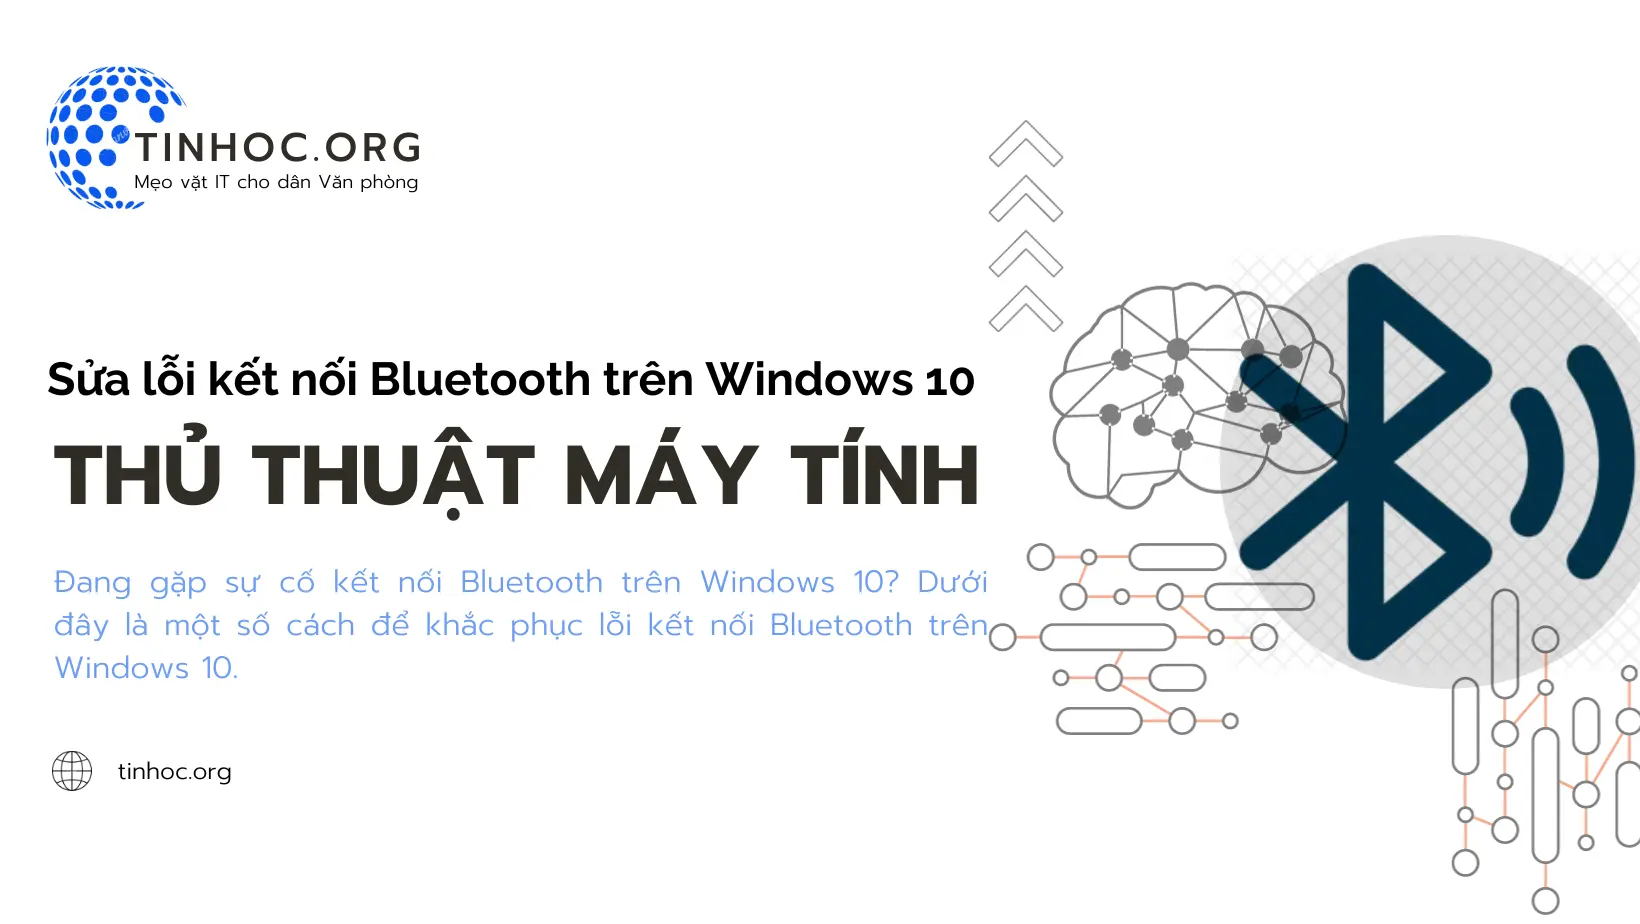 Sửa lỗi kết nối Bluetooth trên Windows 10